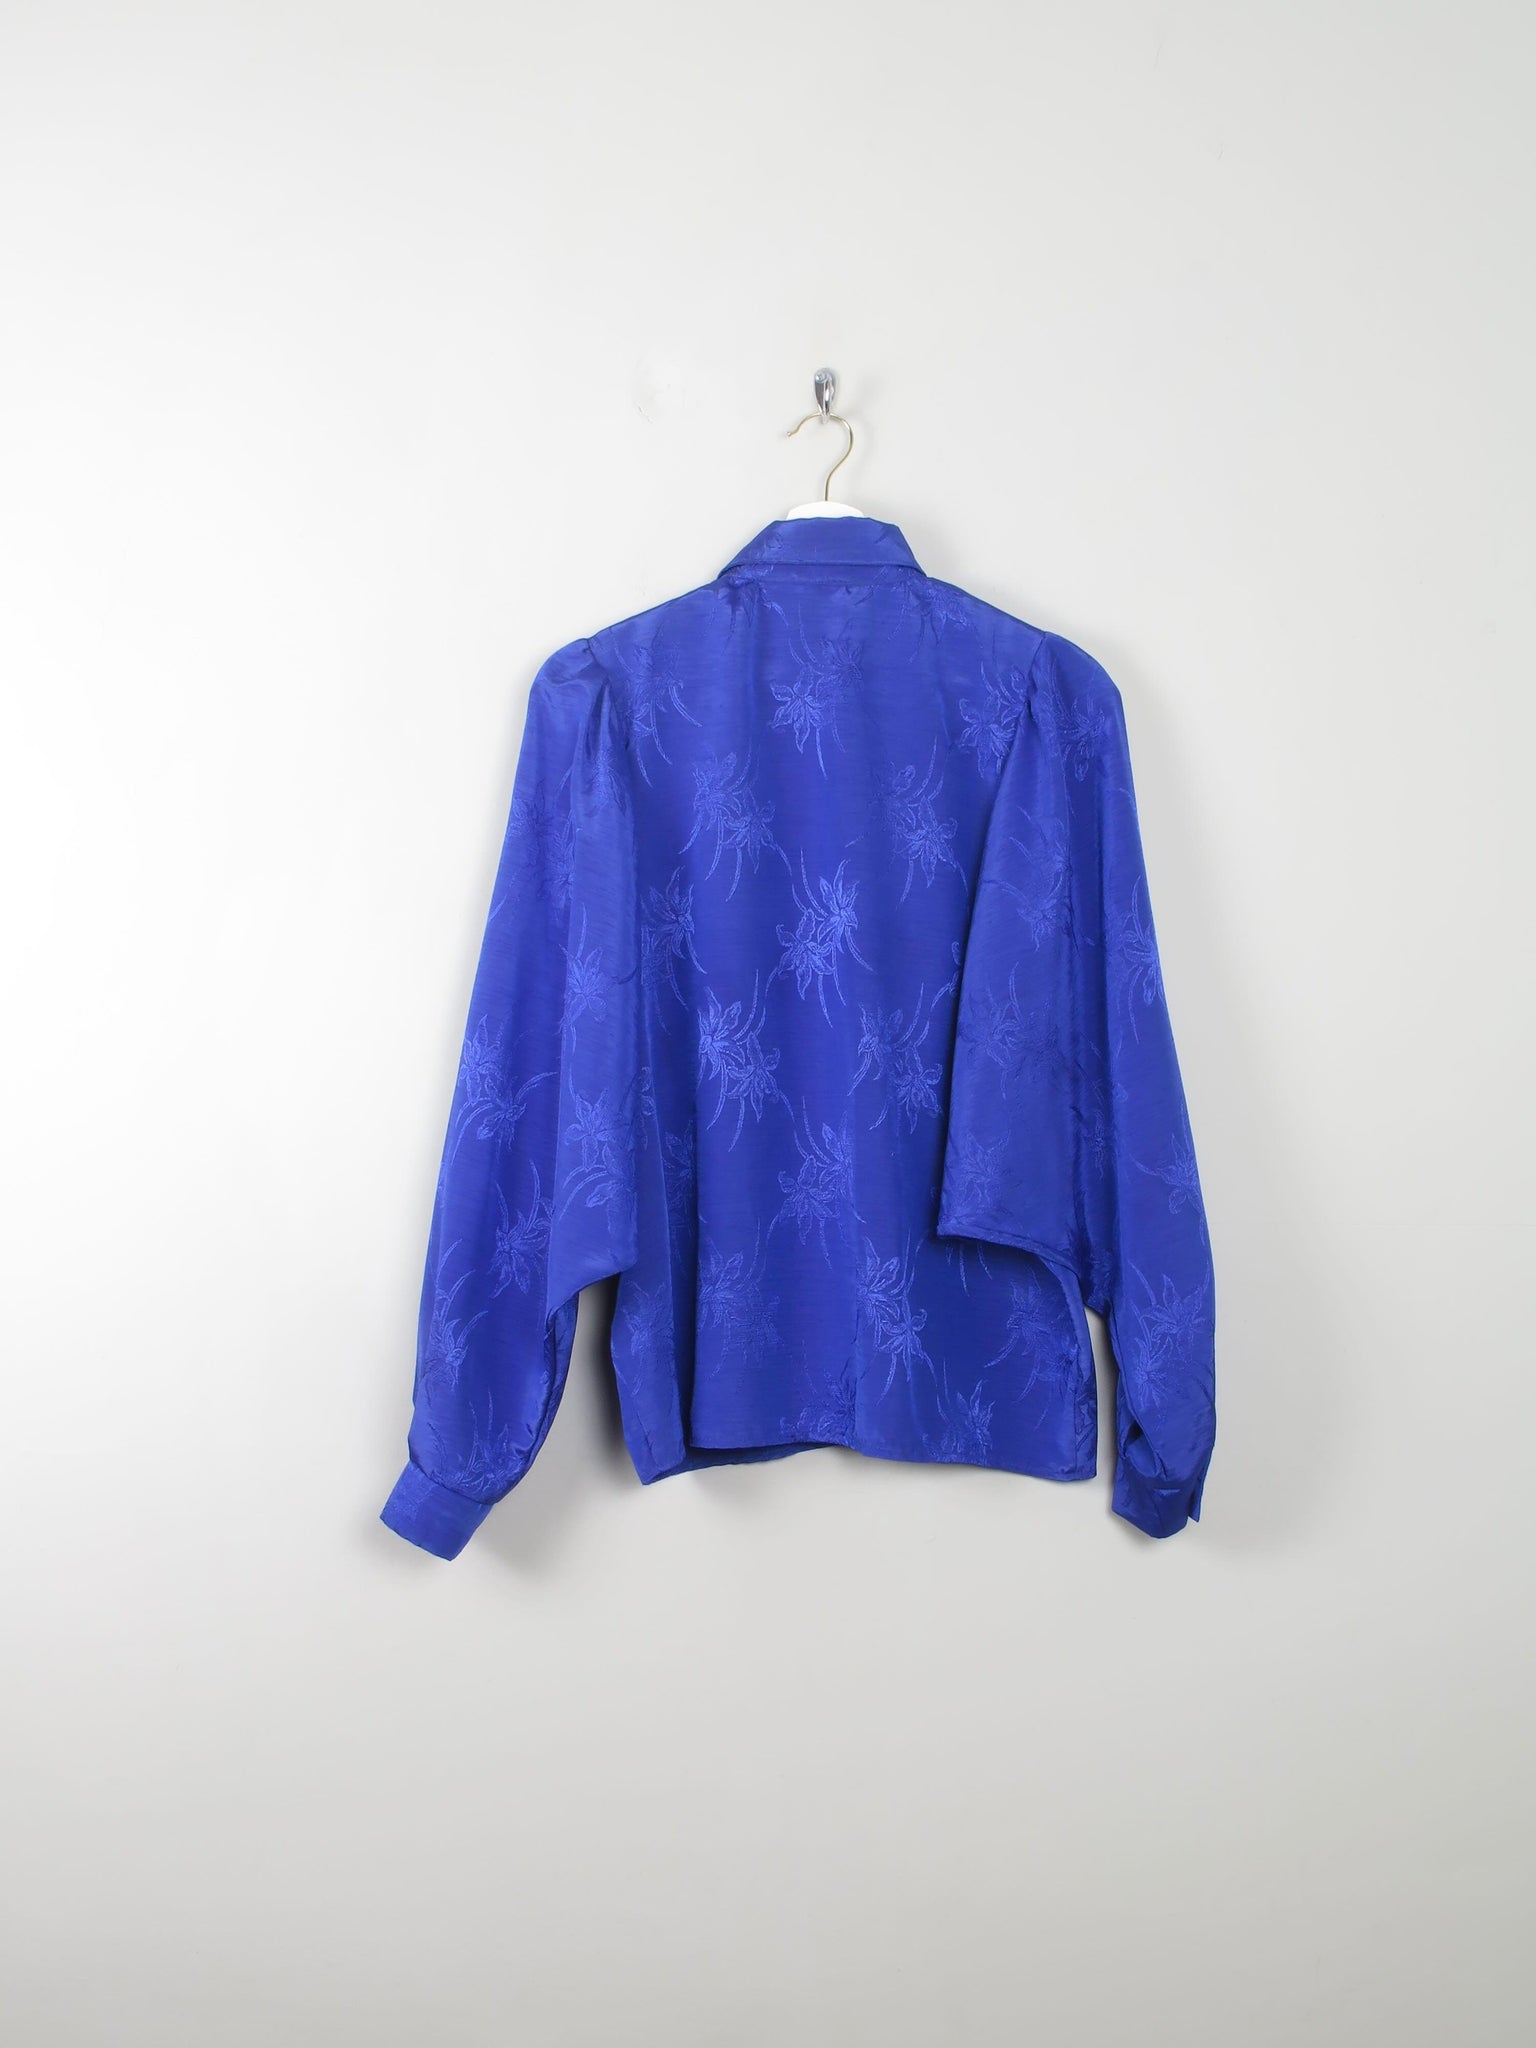 Vintage Blue Patterned Blouse S - The Harlequin